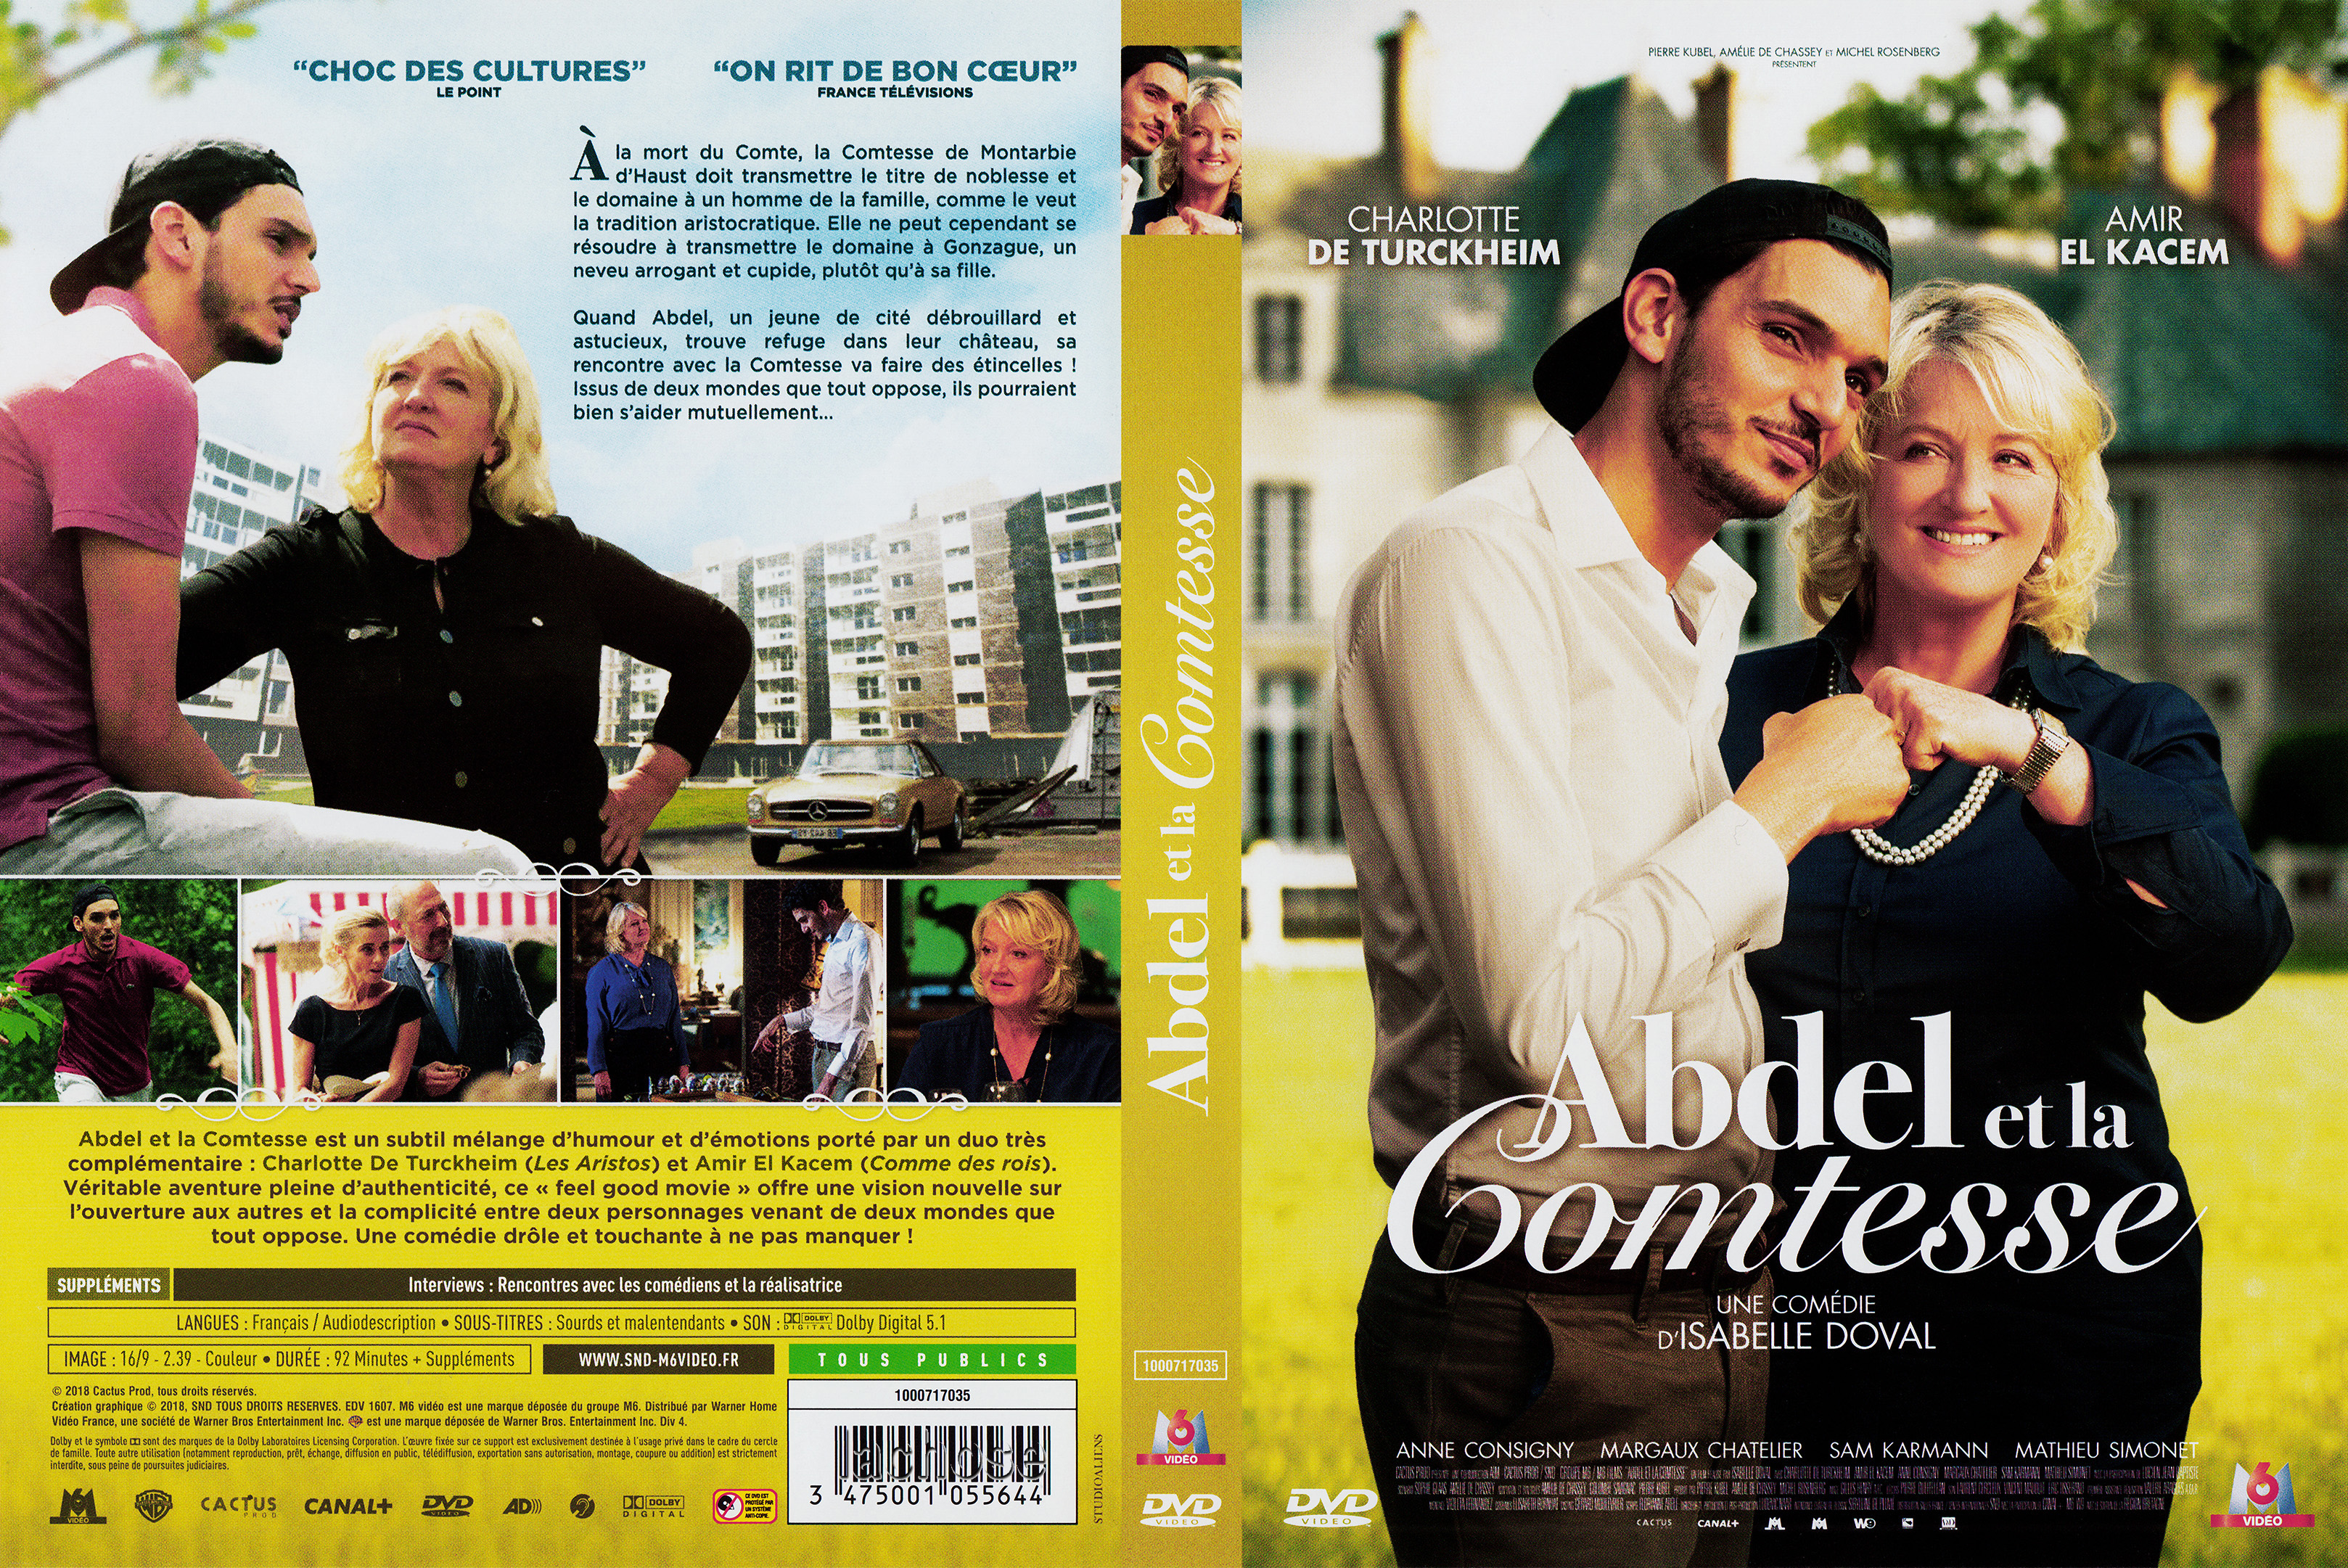 Jaquette DVD Abdel et la comtesse